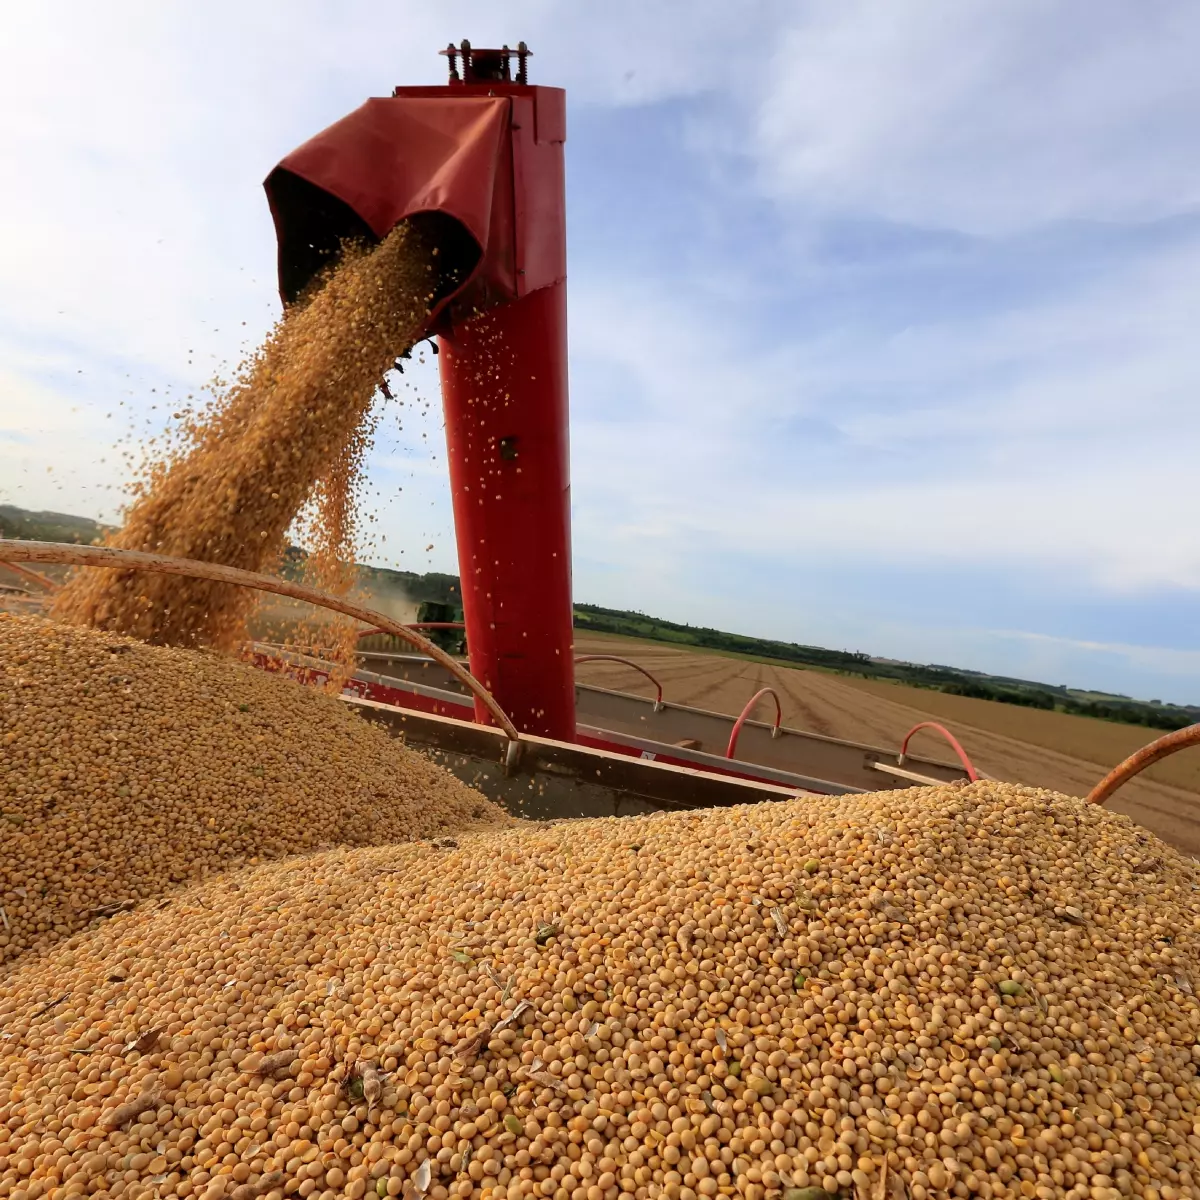  Produção de soja no Mato Grosso tende a ser a pior em 15 anos 